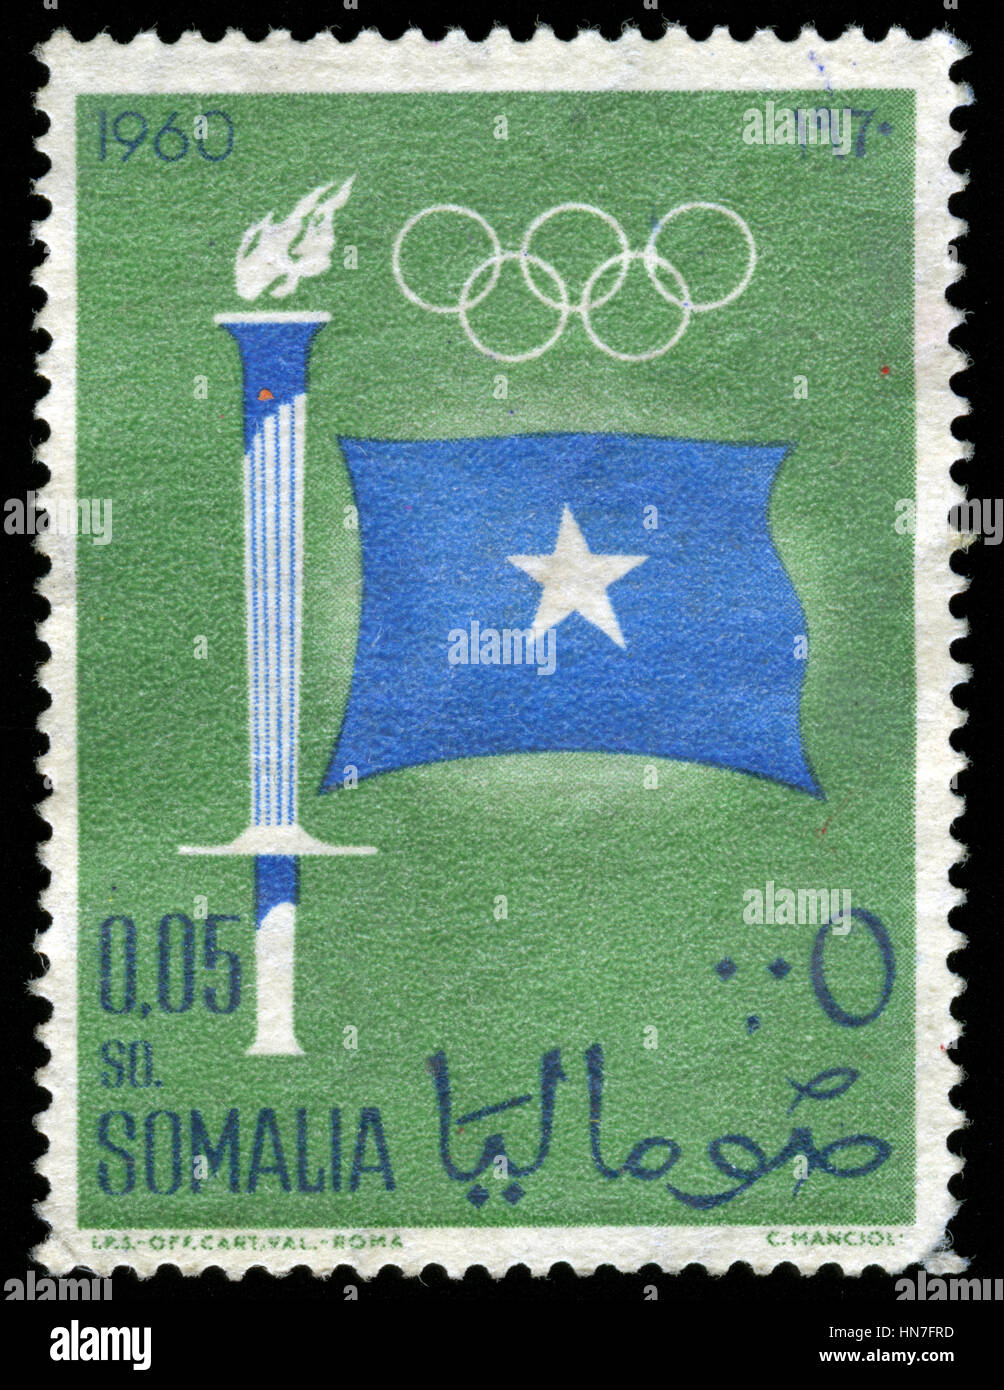 Timbre cachet de la Somalie dans les Jeux Olympiques d'été 1960 - Rome série émise en 1960 Banque D'Images